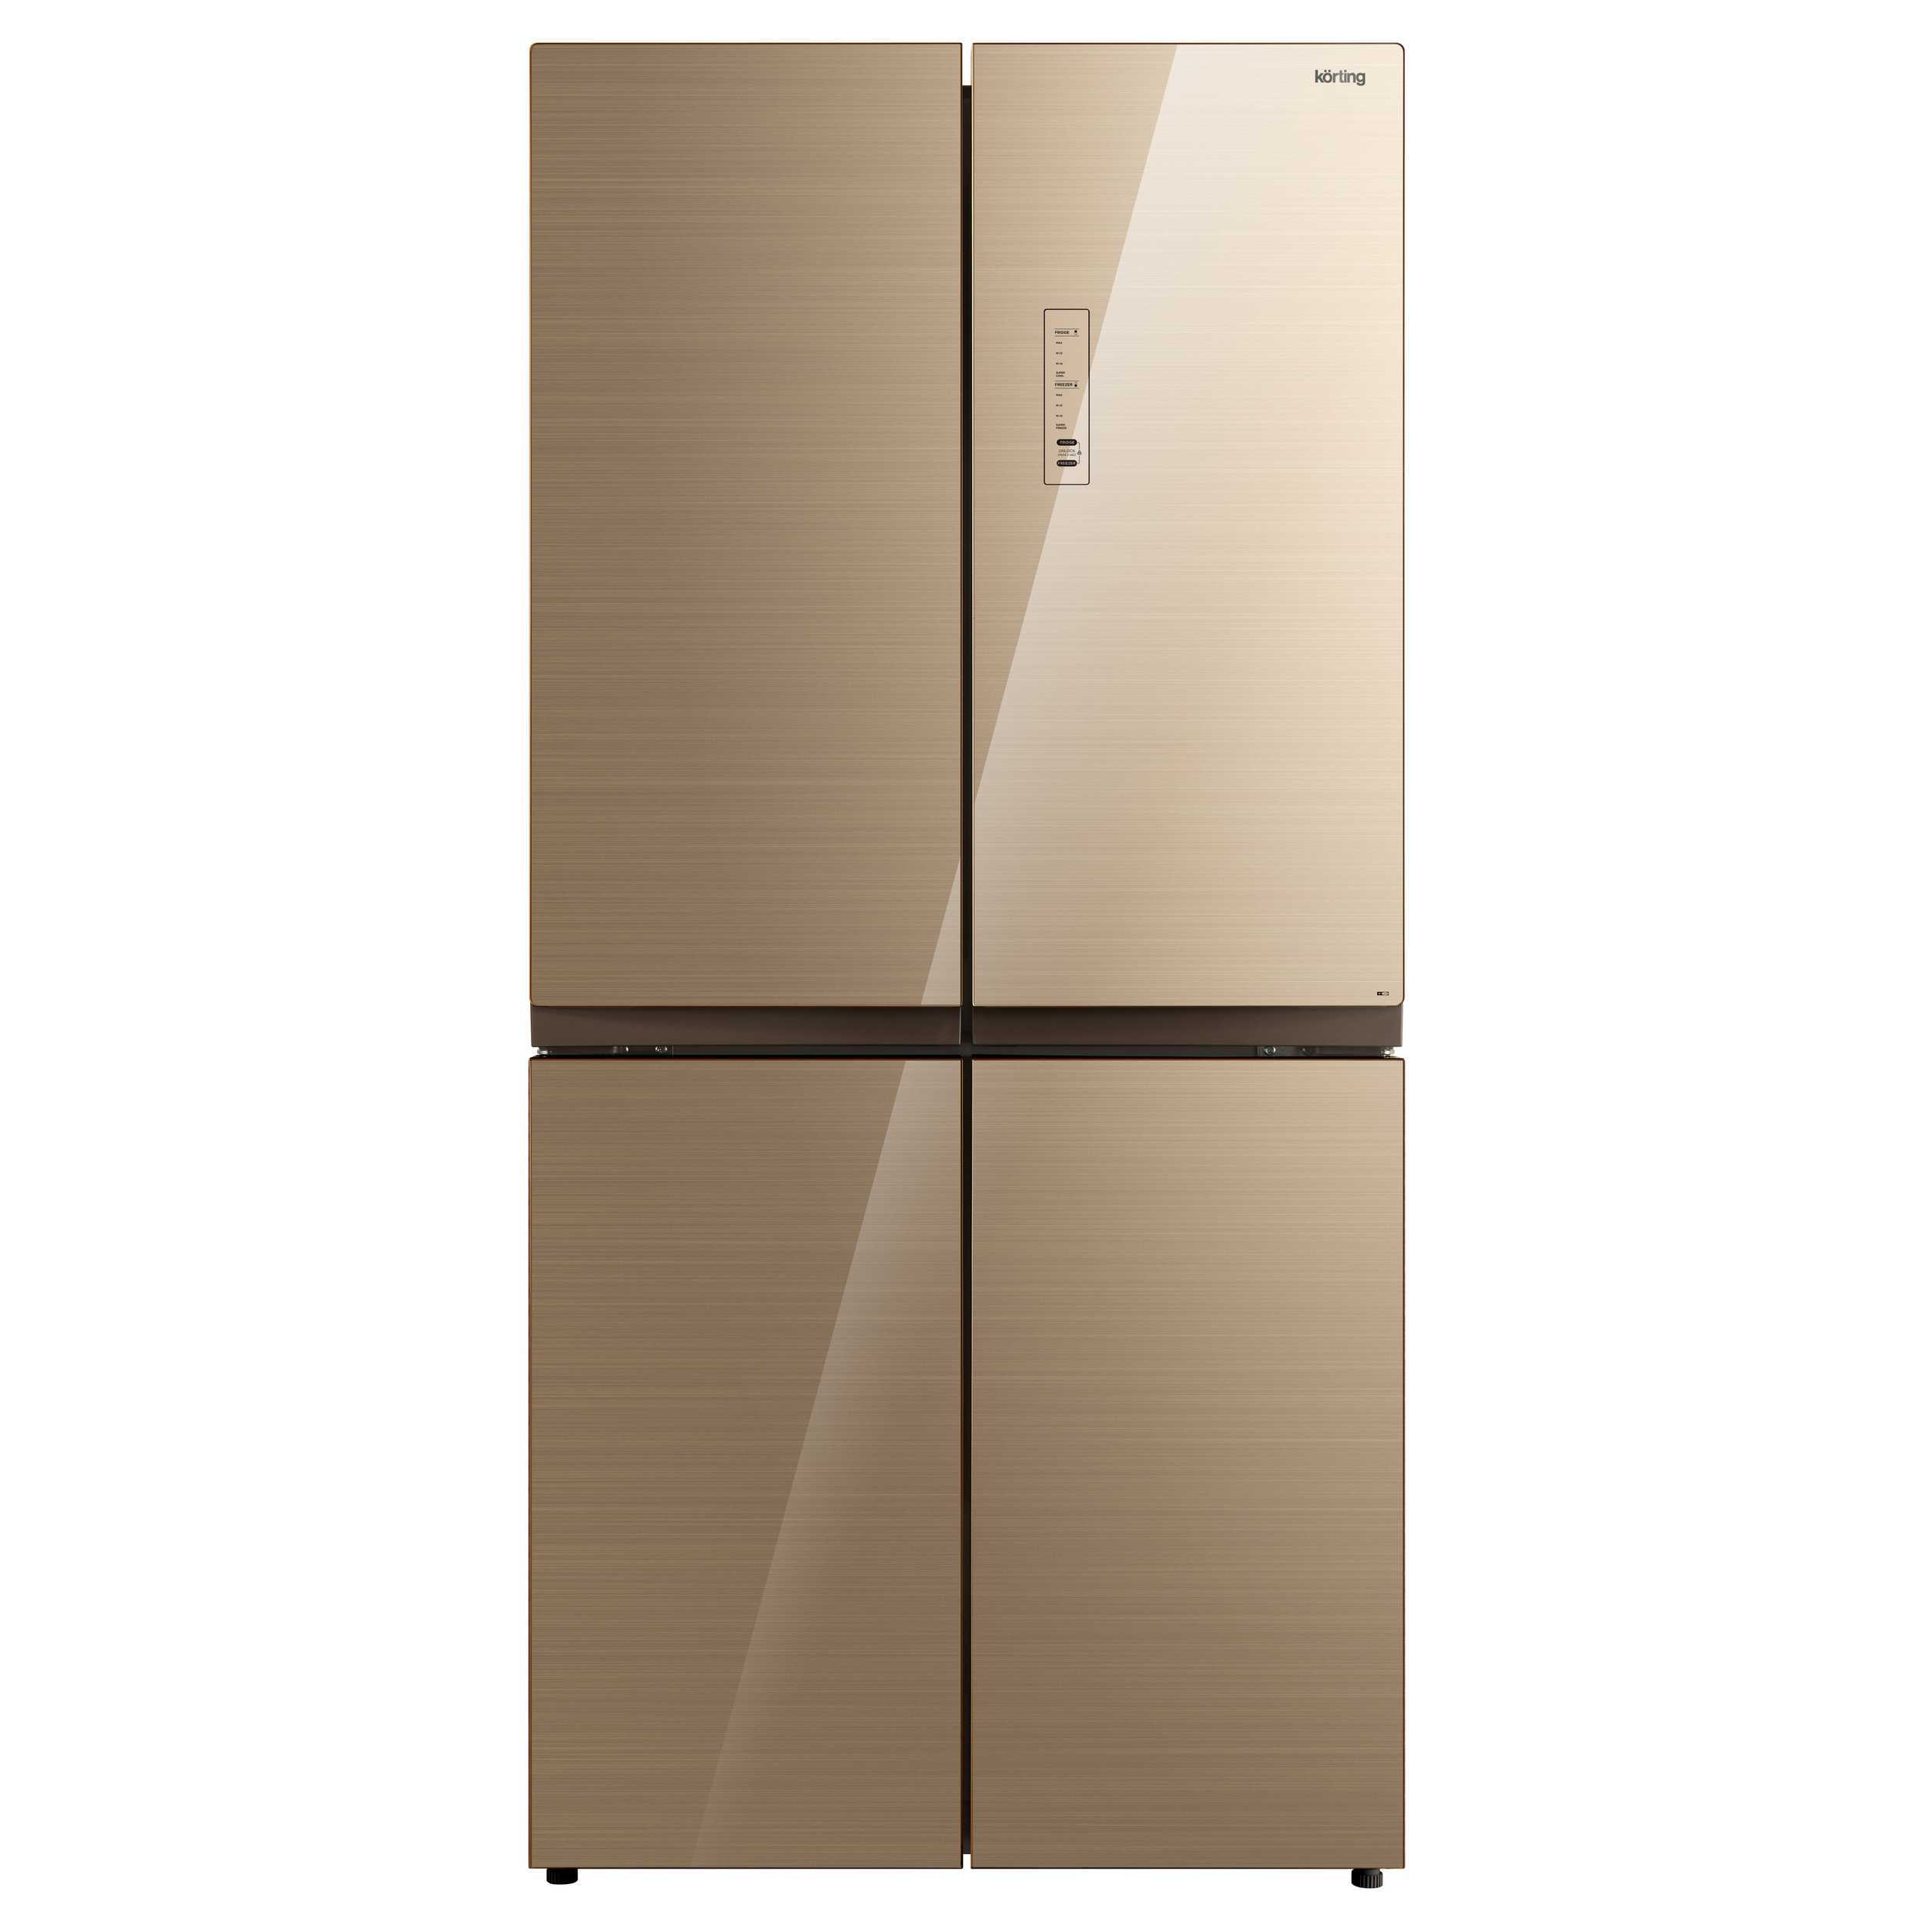 91075748 Отдельностоящий холодильник KNFM 81787 GB 83.3x177.5 см цвет золотисто-бежевый STLM-0471069 KORTING